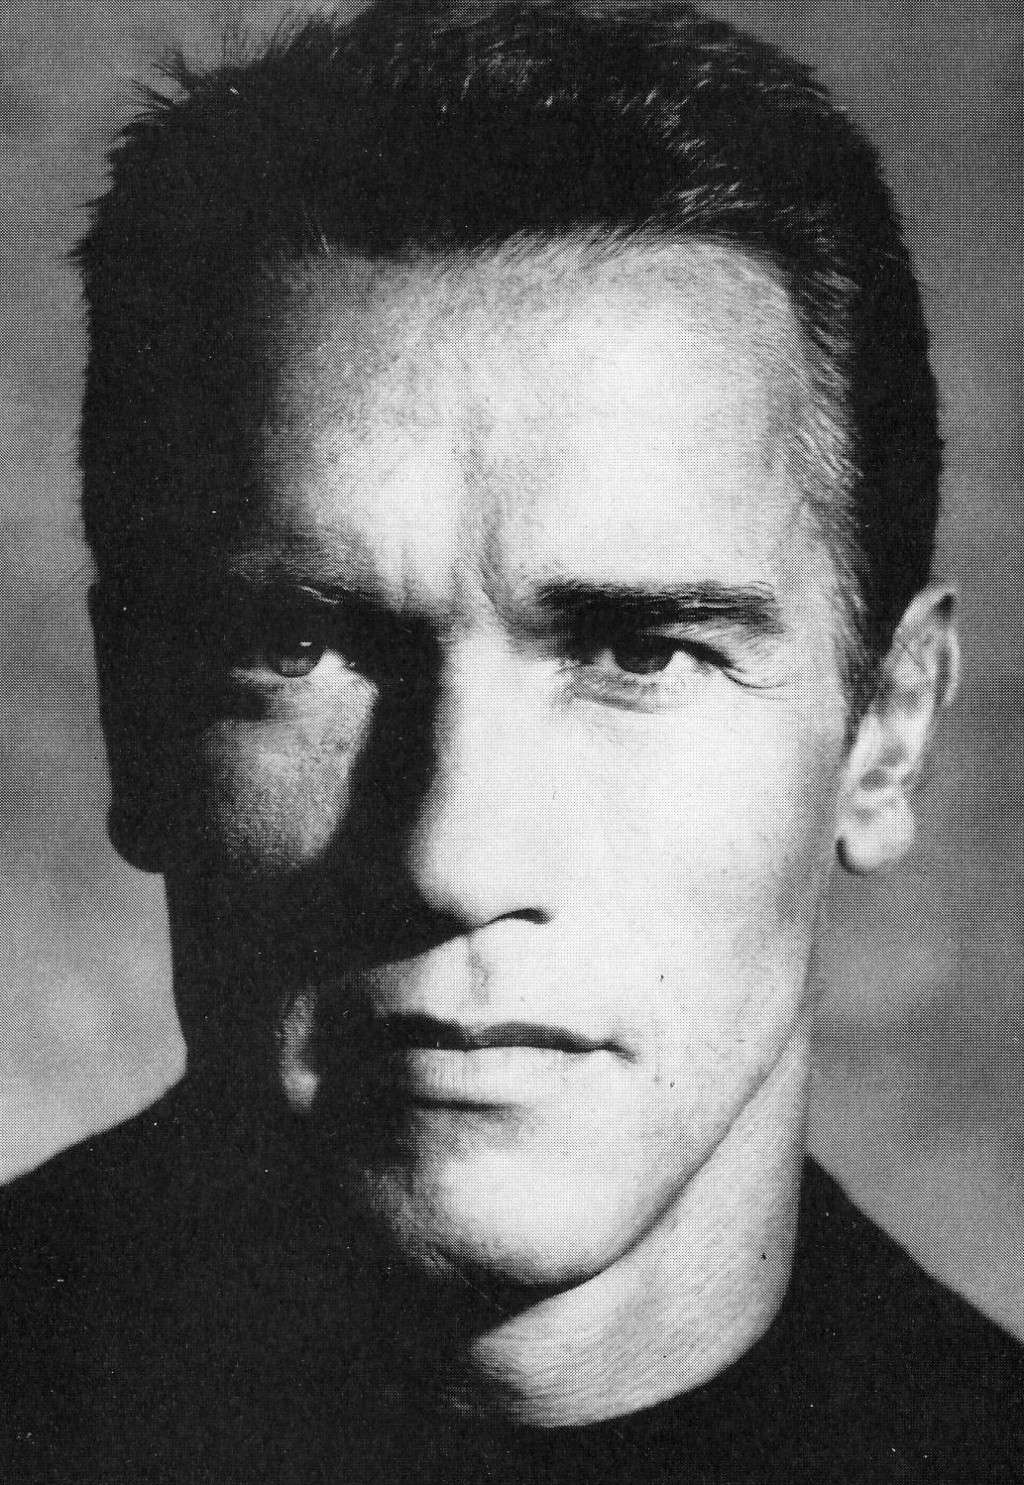 Arnold Schwarzenegger en photos - Page 5 Arnold21